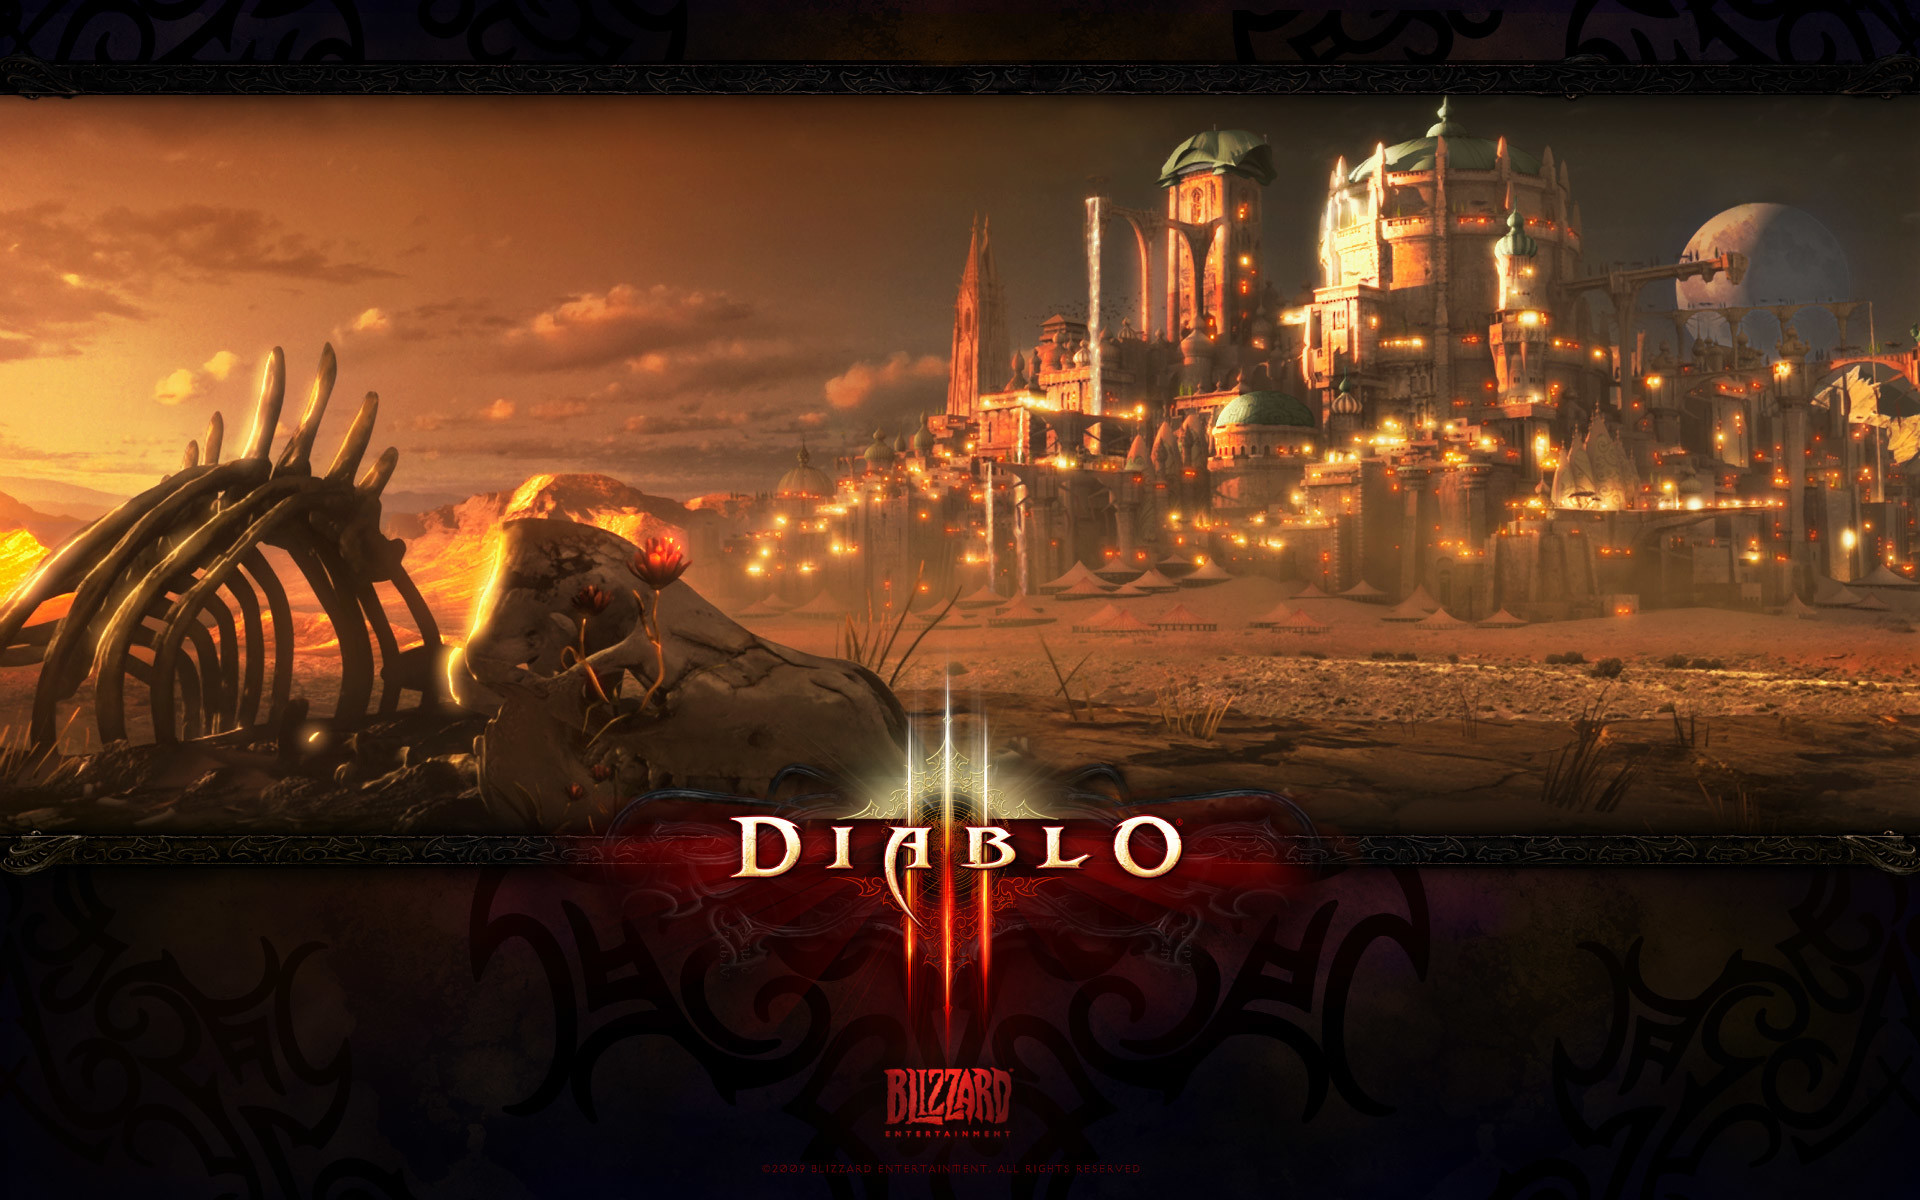 1920x1200 Diablo Reaper of Souls | Games HD Wallpapers | Pinterest | Hd wallpaper